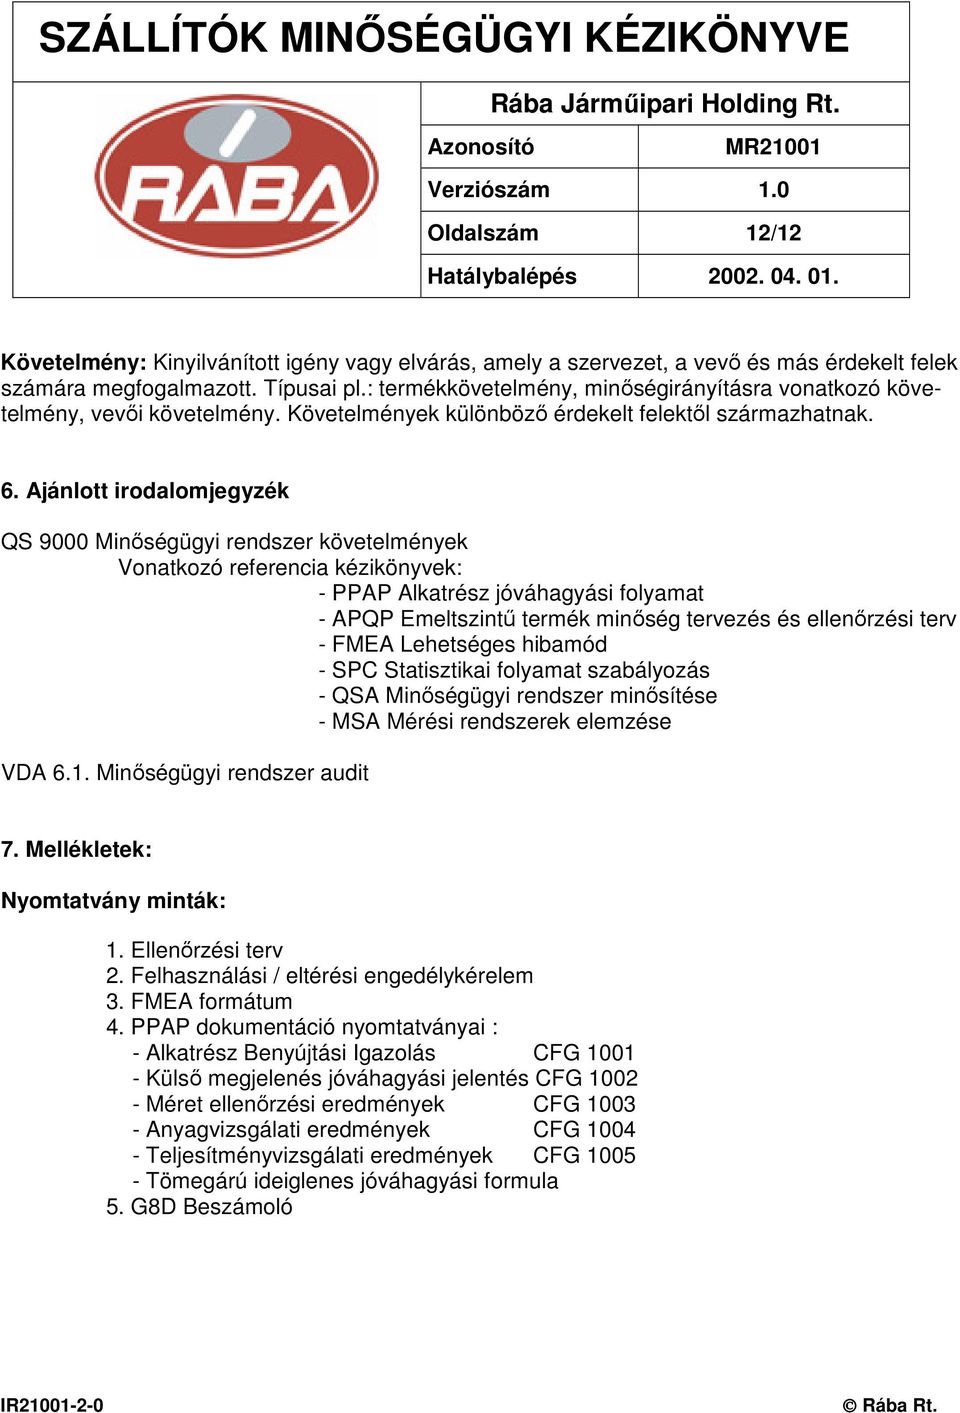 Ajánlott irodalomjegyzék QS 9000 Minıségügyi rendszer követelmények Vonatkozó referencia kézikönyvek: - PPAP Alkatrész jóváhagyási folyamat - APQP Emeltszintő termék minıség tervezés és ellenırzési